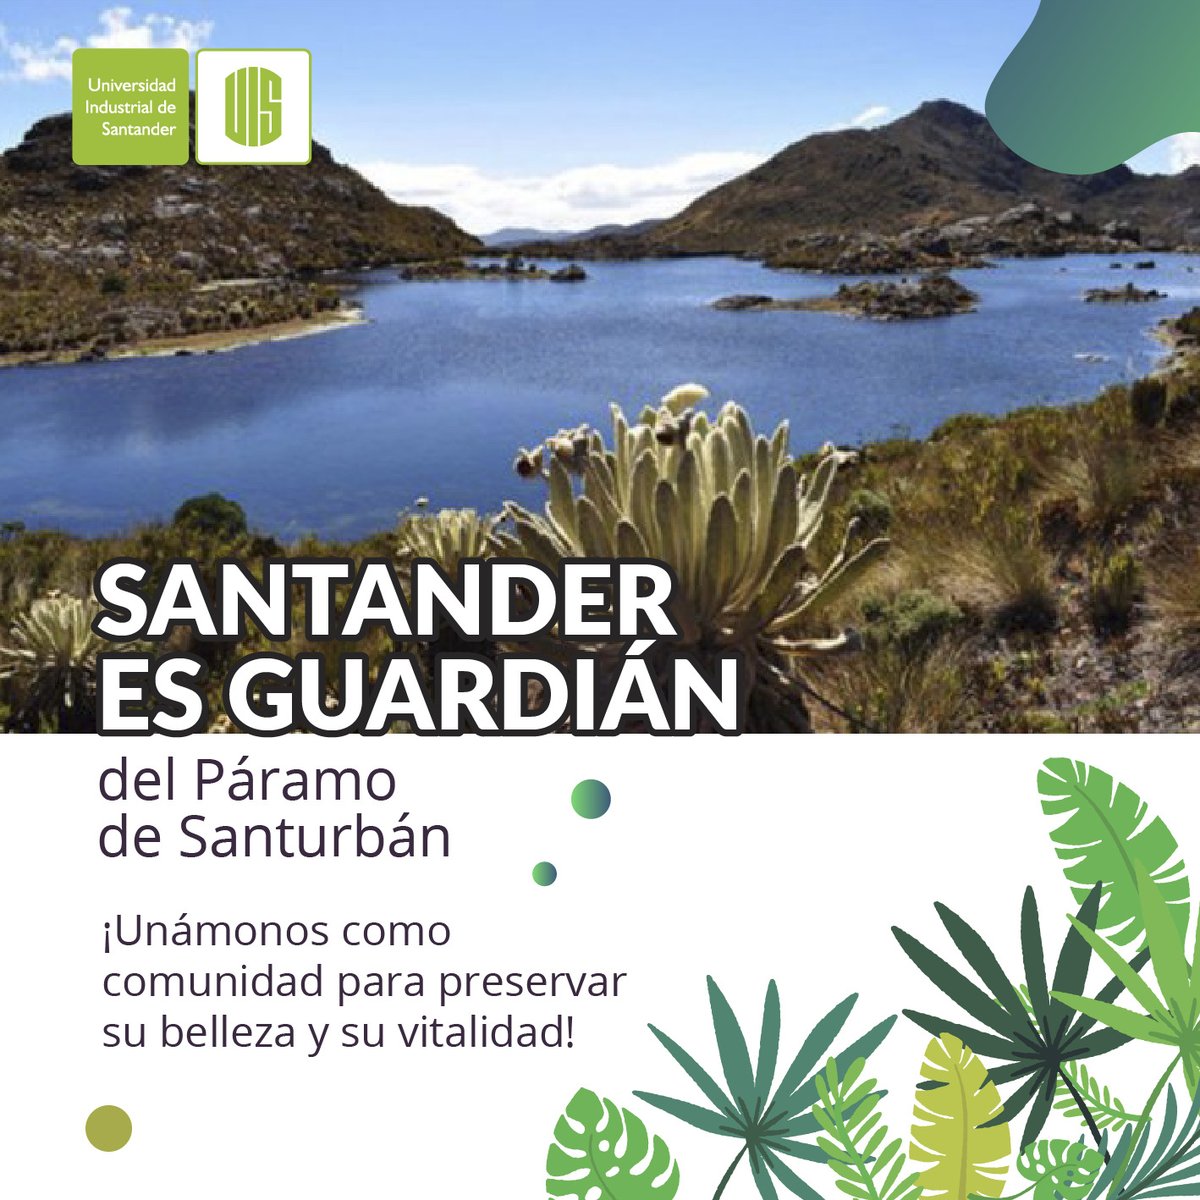 En las alturas de Santurbán, el agua brota como un tesoro invaluable. Cuidar este santuario es preservar la fuente de vida de Colombia. 💚